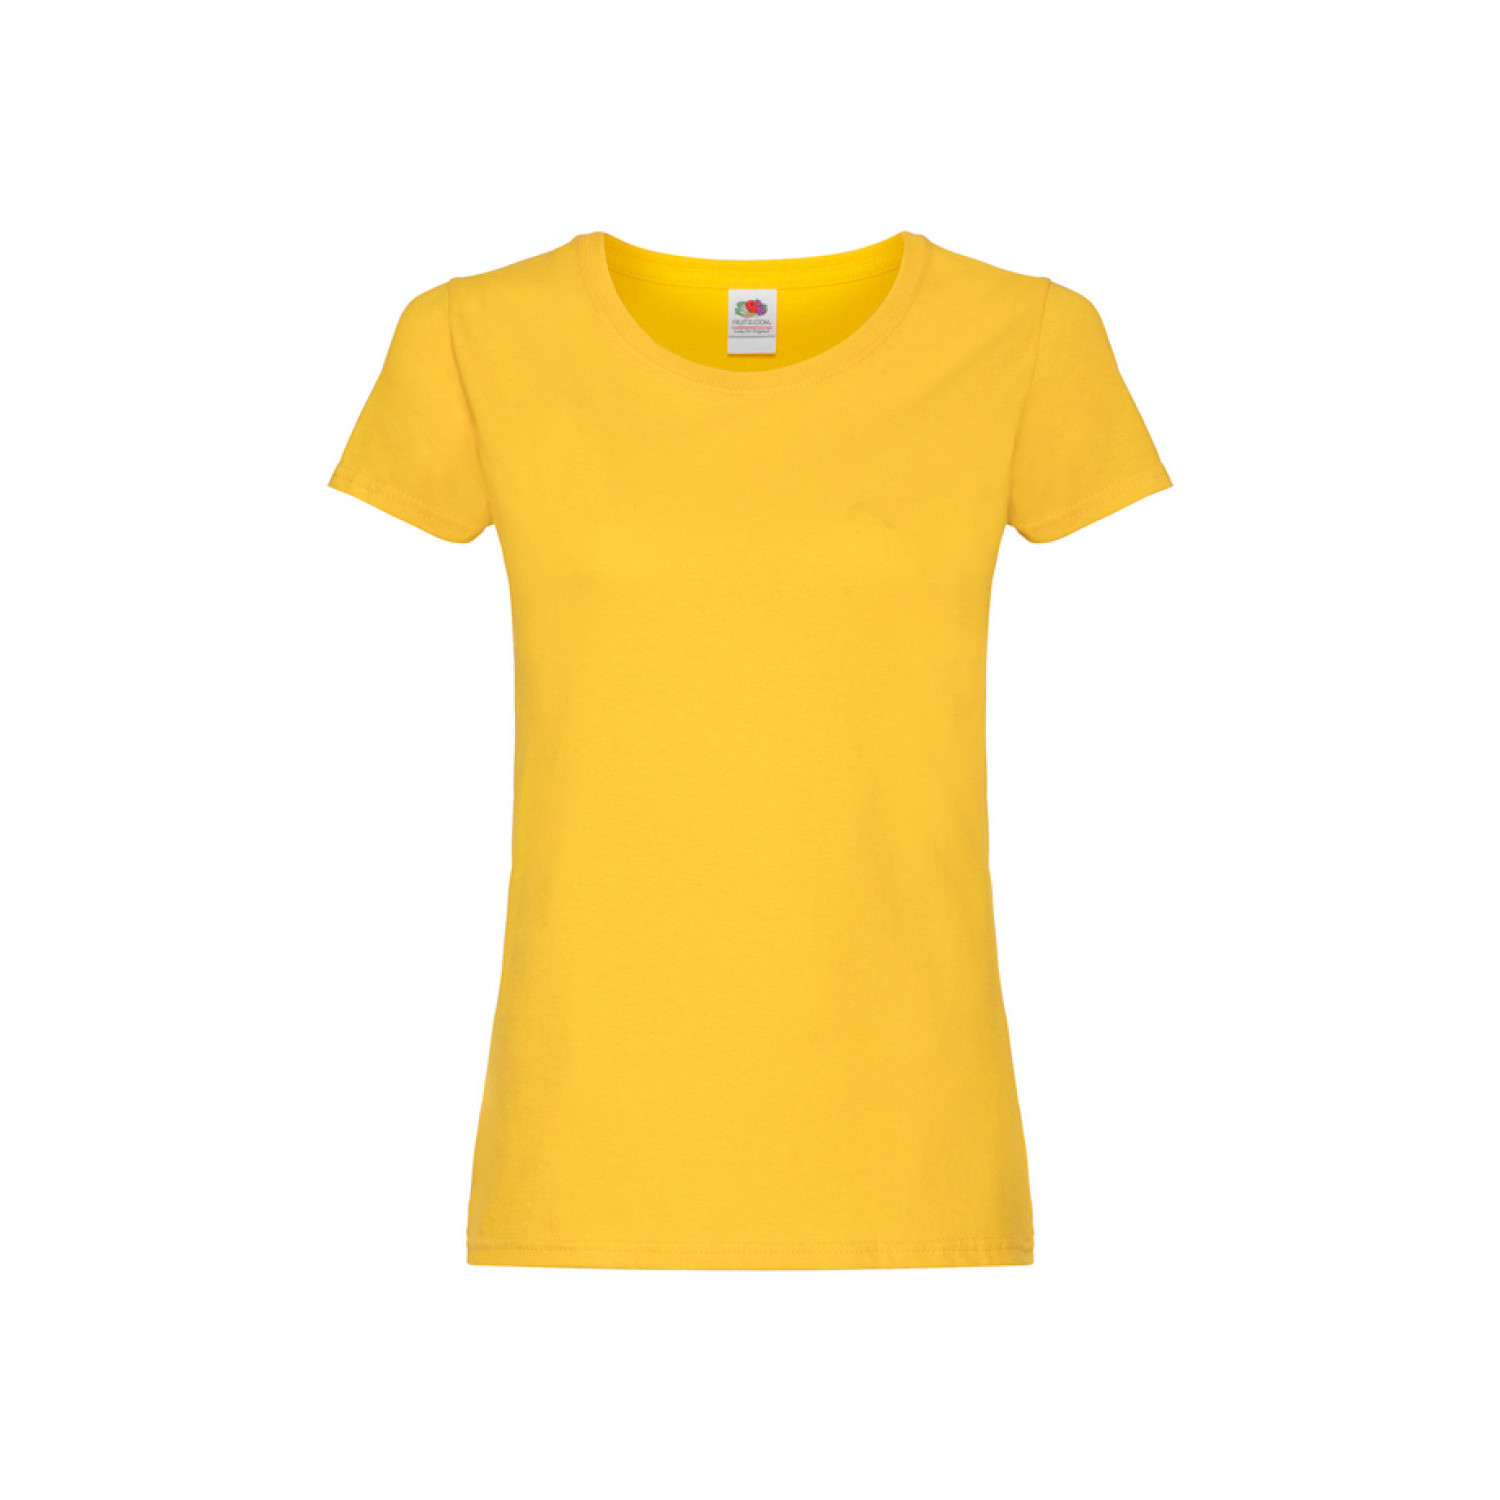 Дамска тениска, жълта